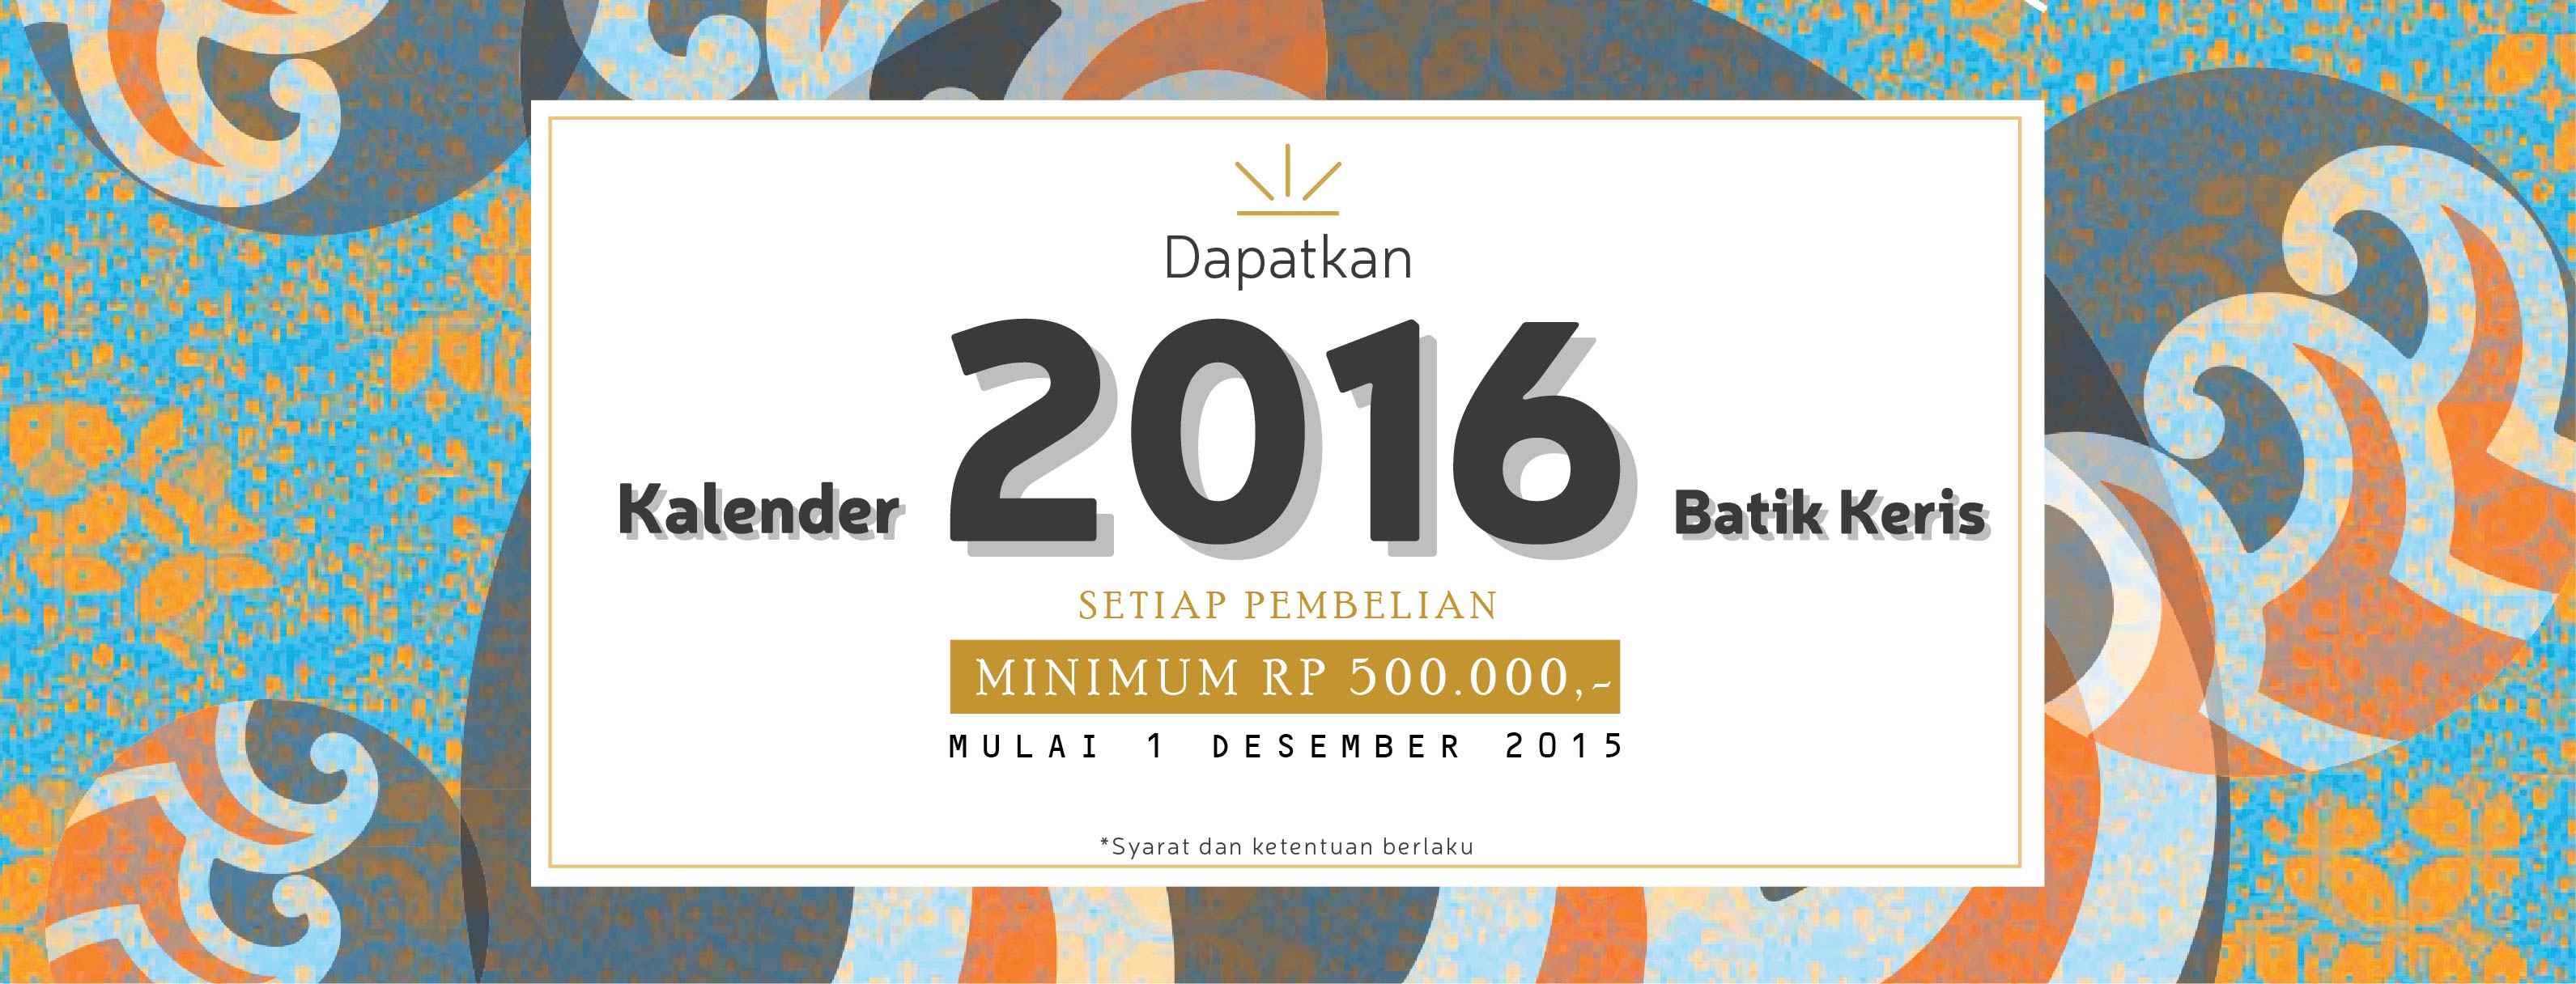 Kalender 2016 Batik Keris